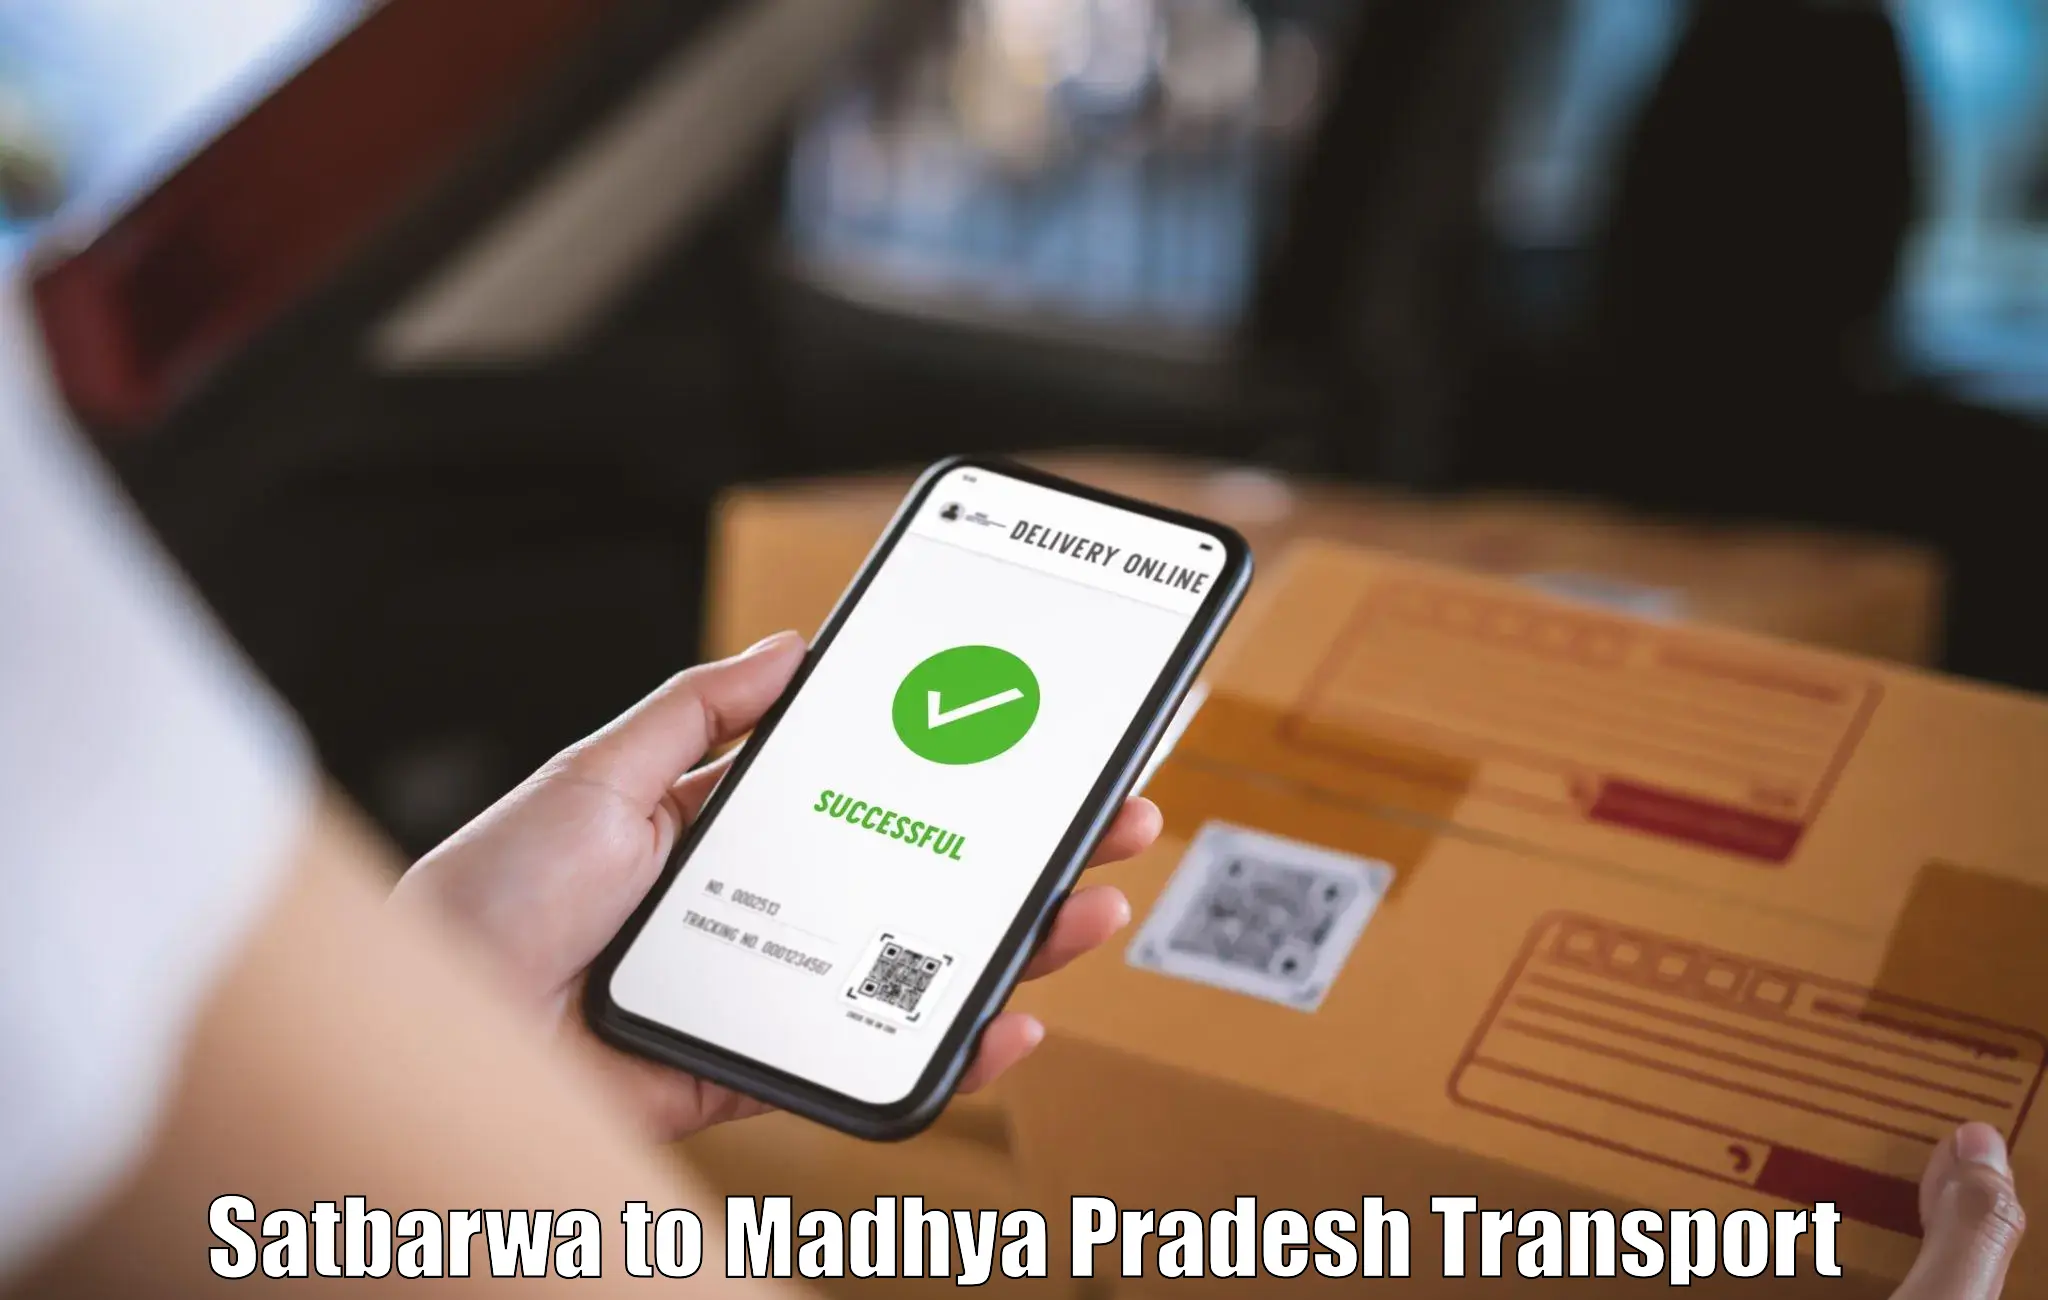 Vehicle courier services Satbarwa to Madhya Pradesh